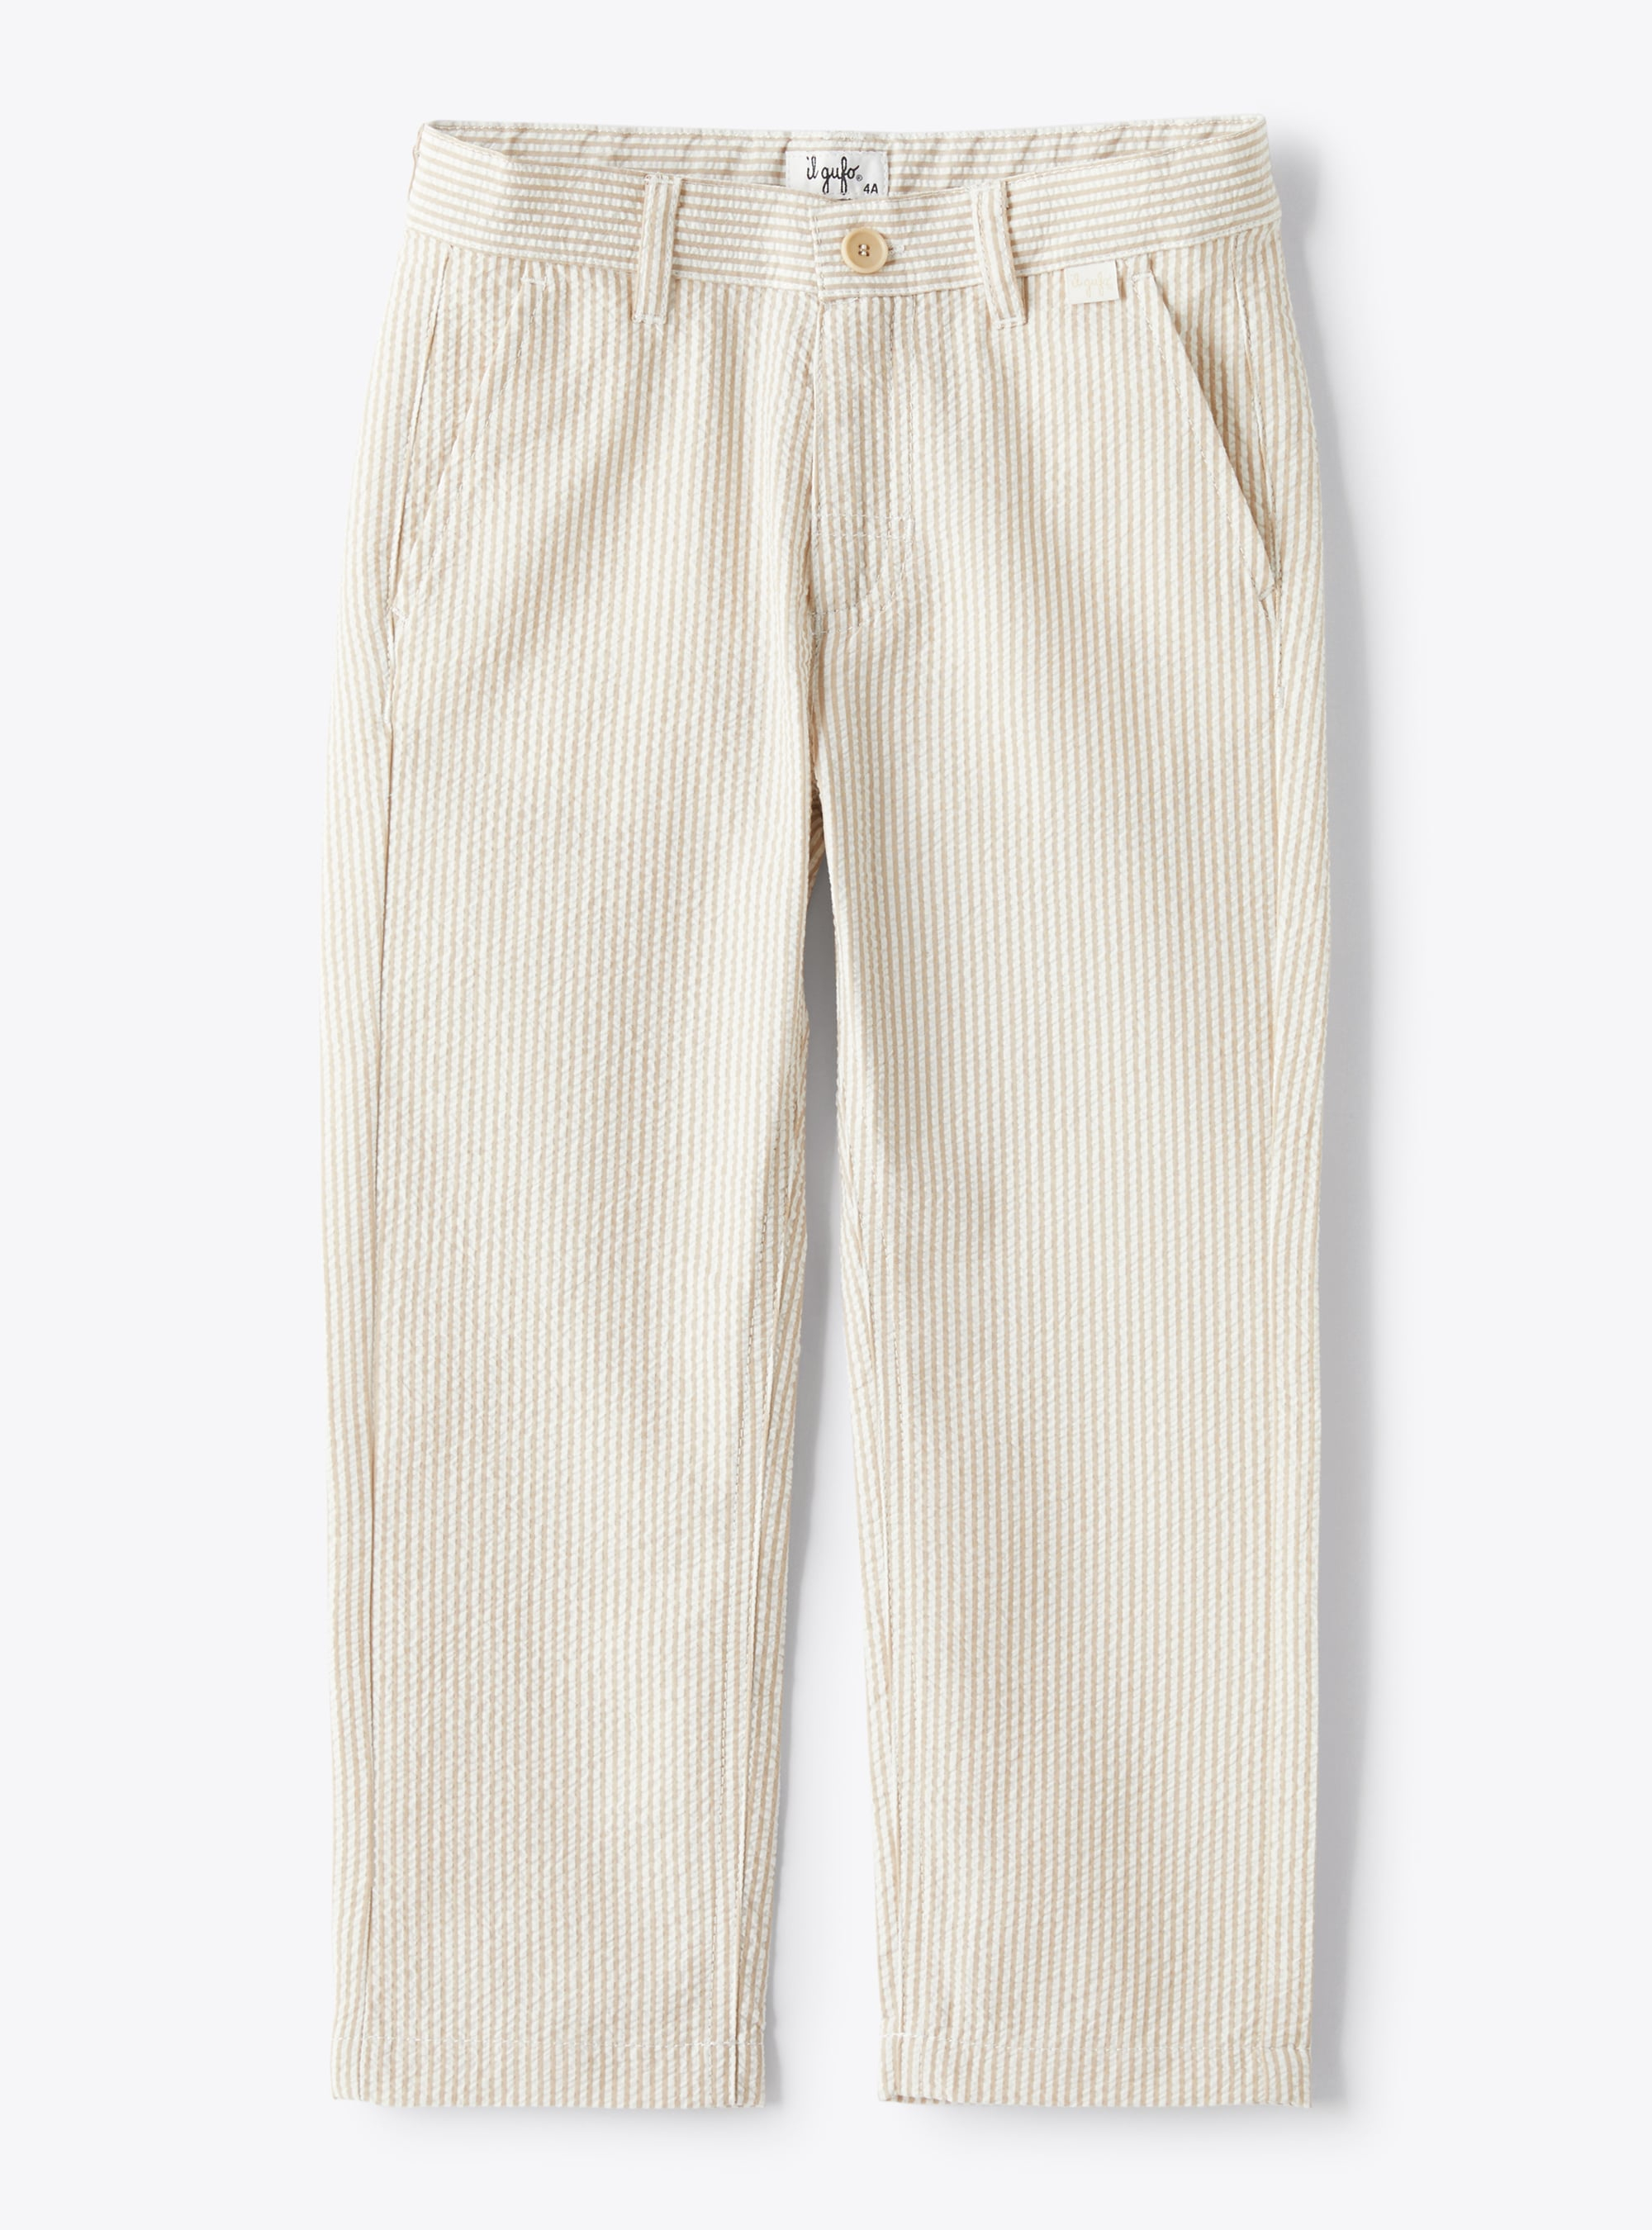 Lange Hose aus Seersucker mit beigen und weißen Streifen - Hosen - Il Gufo